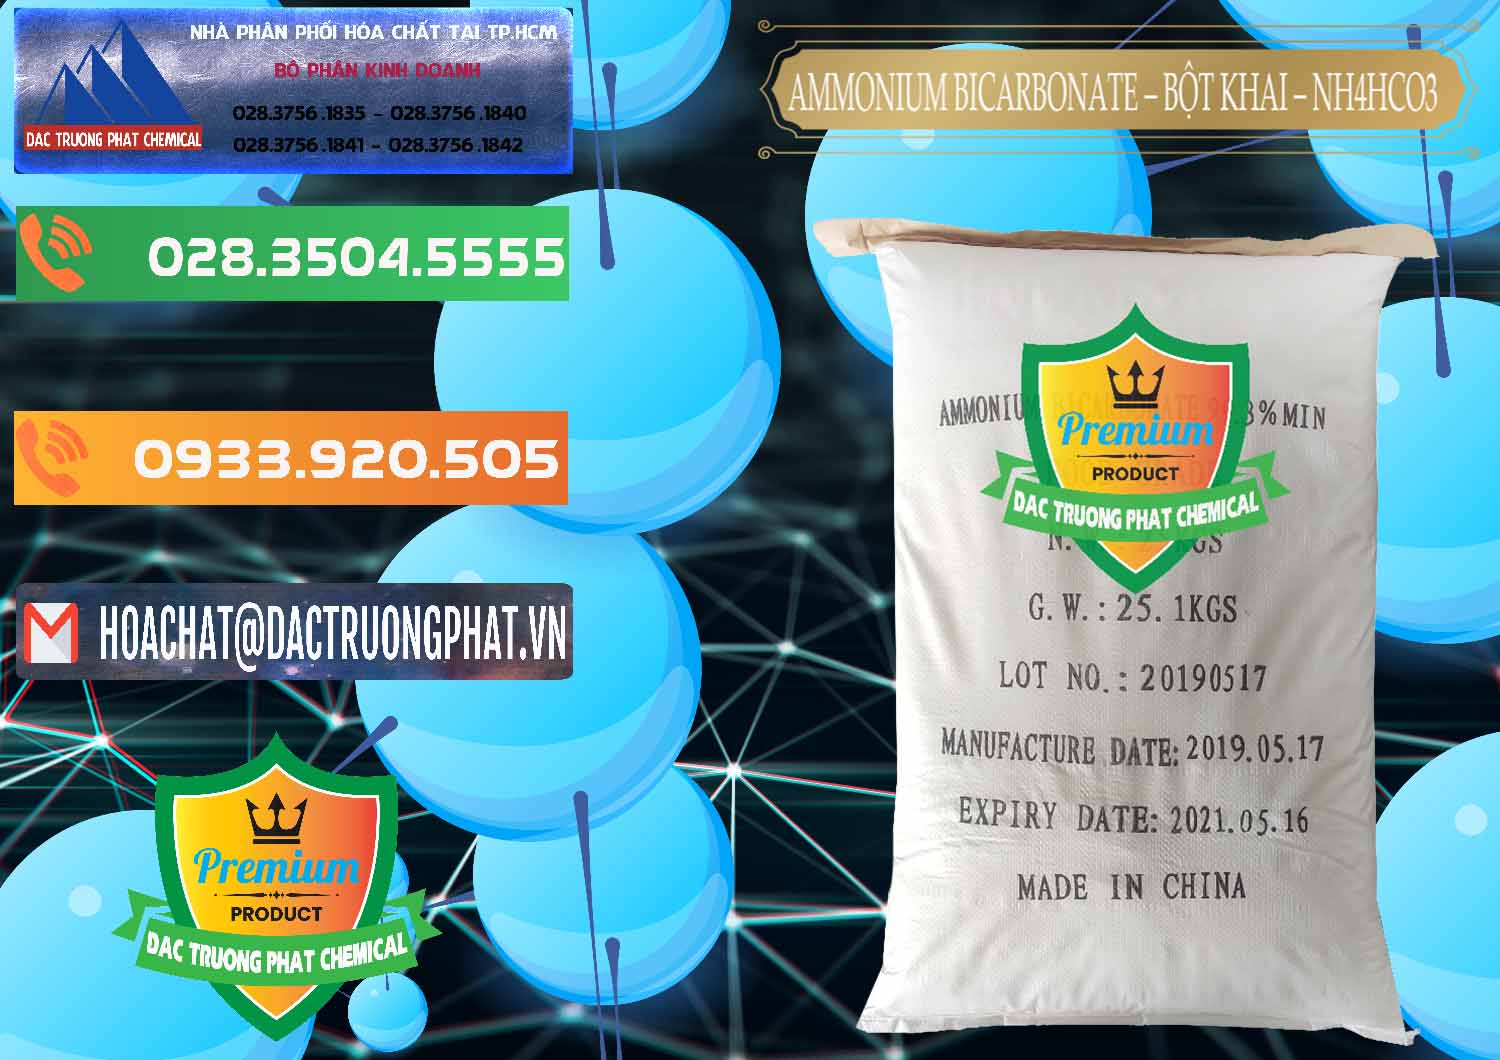 Công ty chuyên kinh doanh - bán Ammonium Bicarbonate - Bột Khai Food Grade Trung Quốc China - 0018 - Công ty bán & phân phối hóa chất tại TP.HCM - hoachatxulynuoc.com.vn